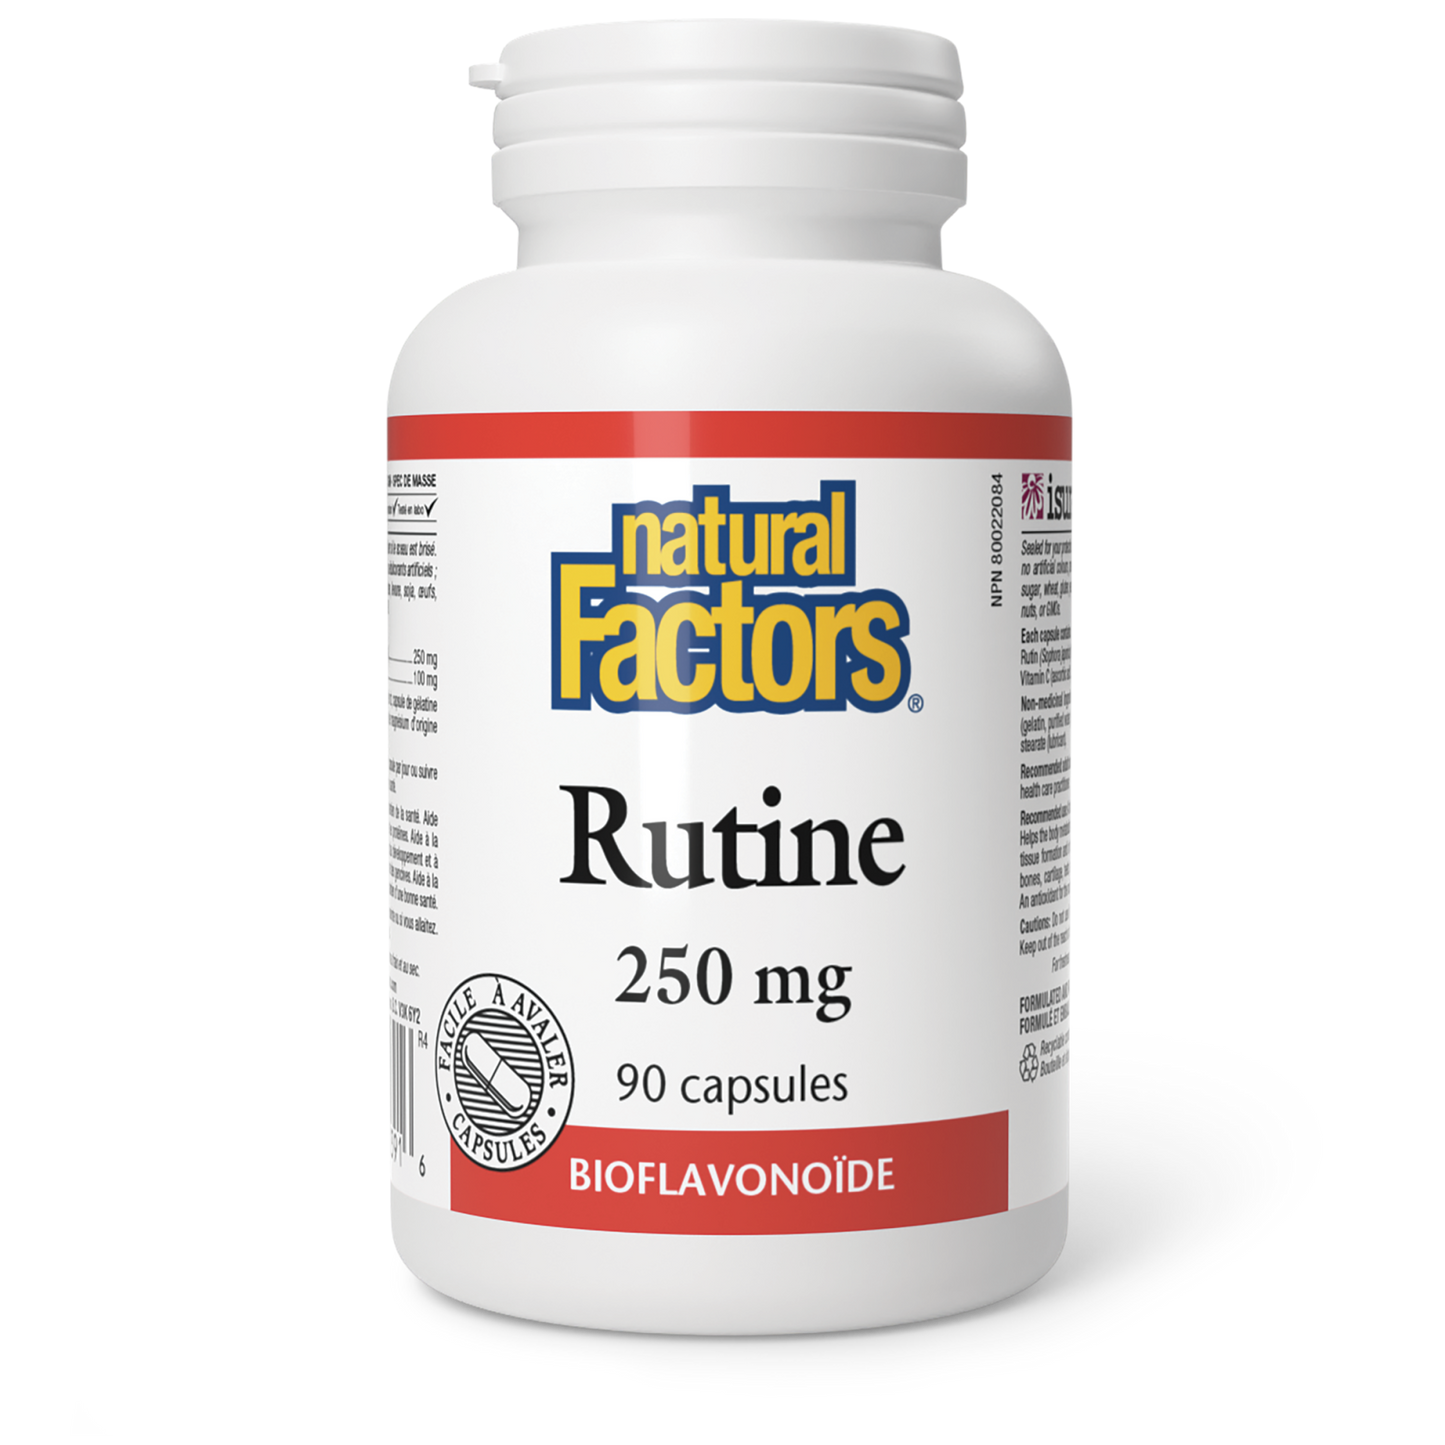 Rutine 250 mg, Natural Factors|v|image|1391